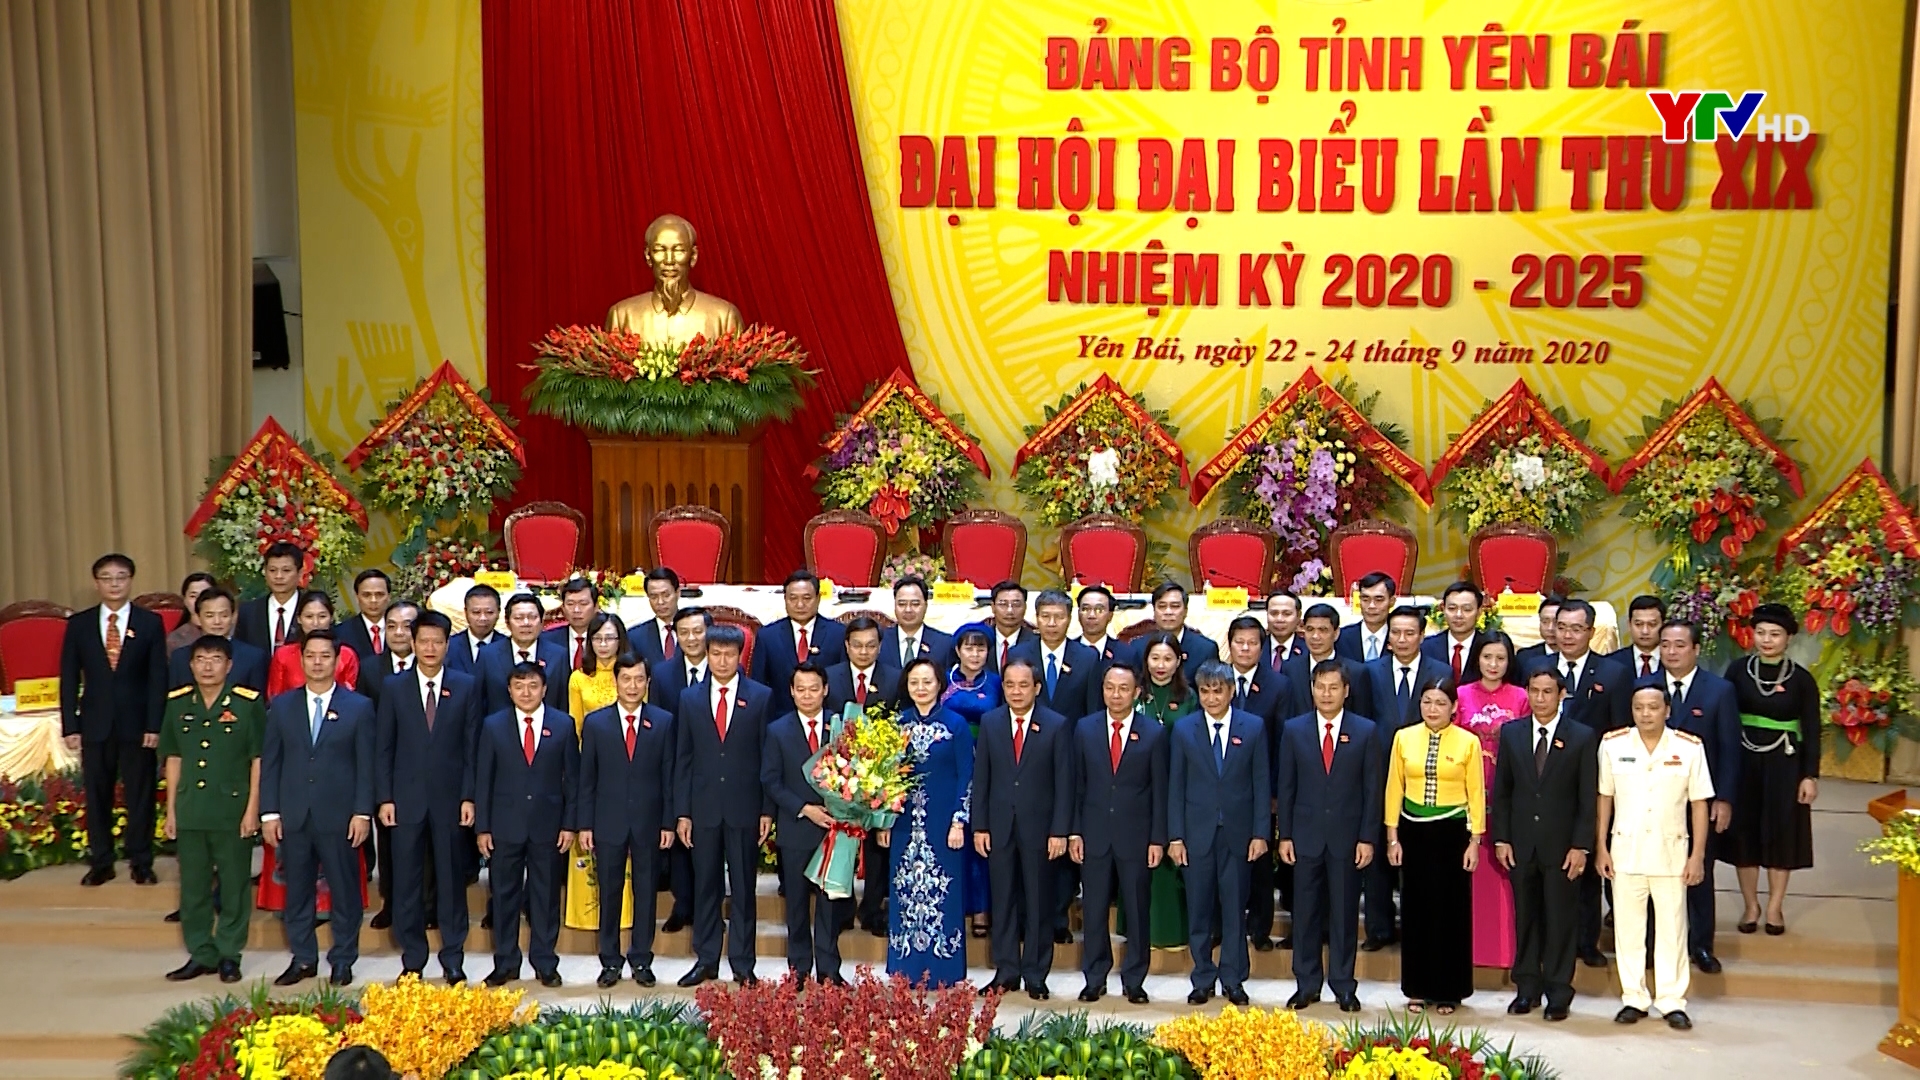 Tường thuật bế mạc Đại hội Đảng bộ tỉnh Yên Bái lần thứ XIX, nhiệm kỳ 2020 - 2025